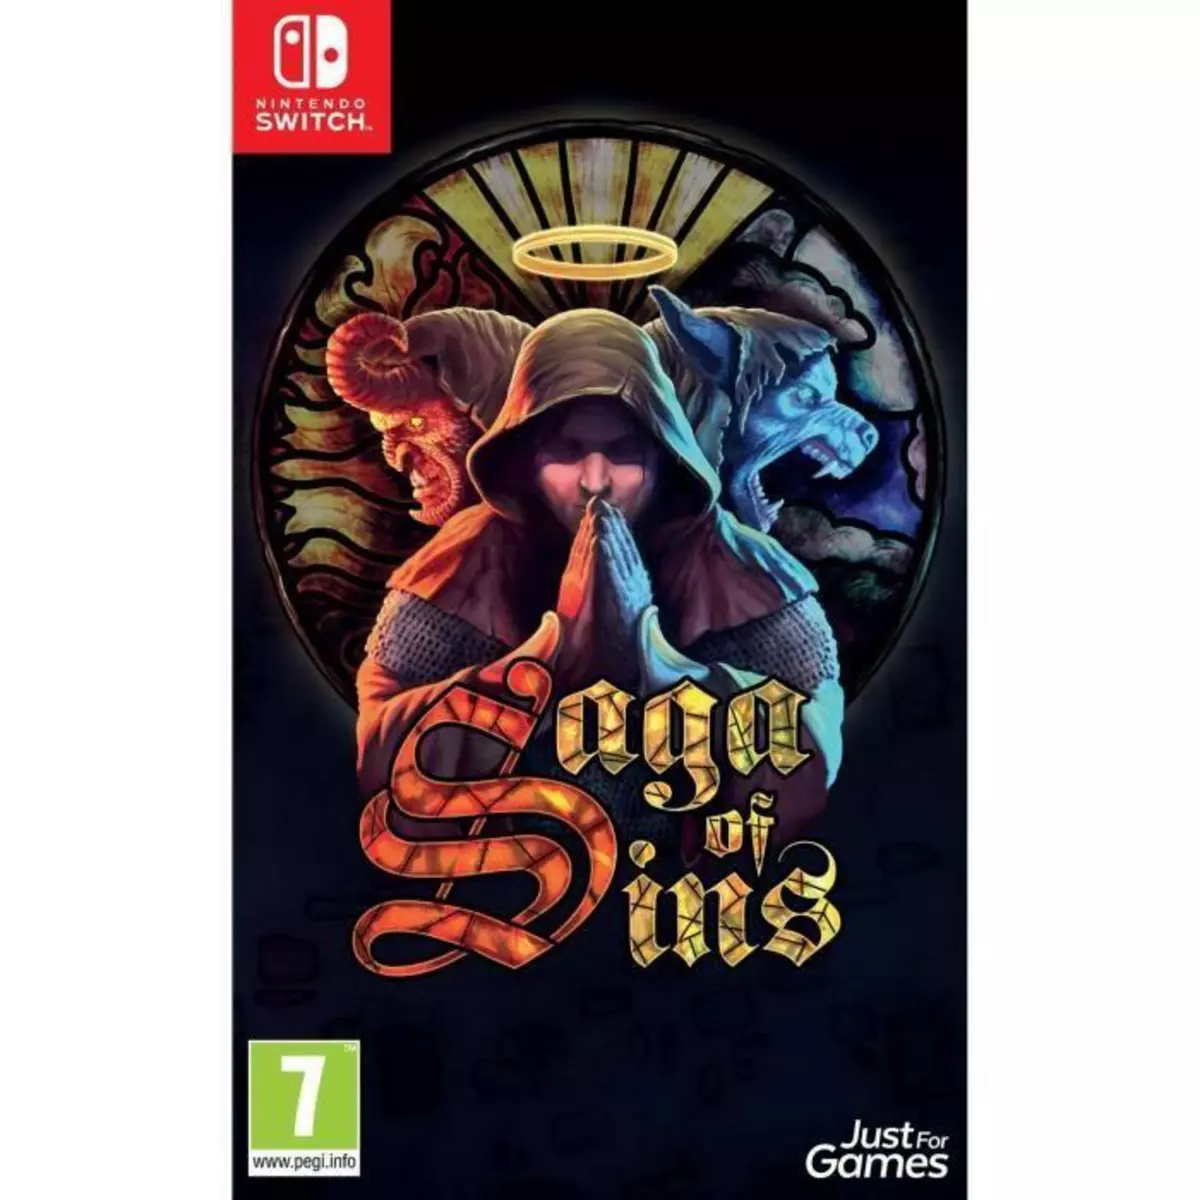  Saga Of Sins Jeu Nintendo Switch